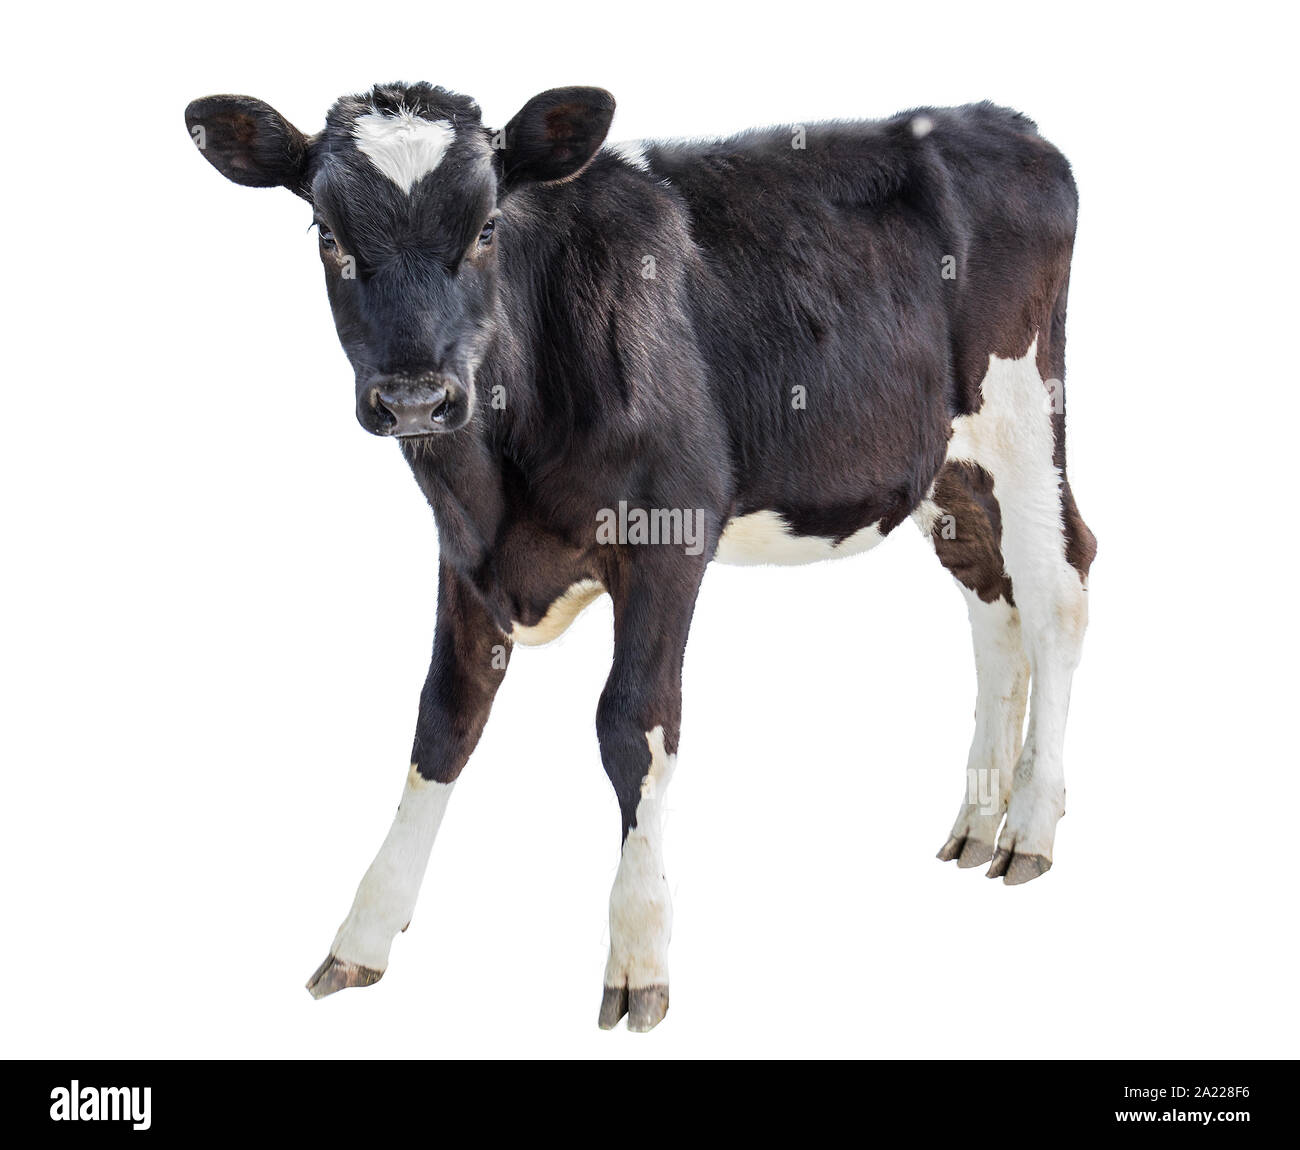 cow farm animal Stock Photo